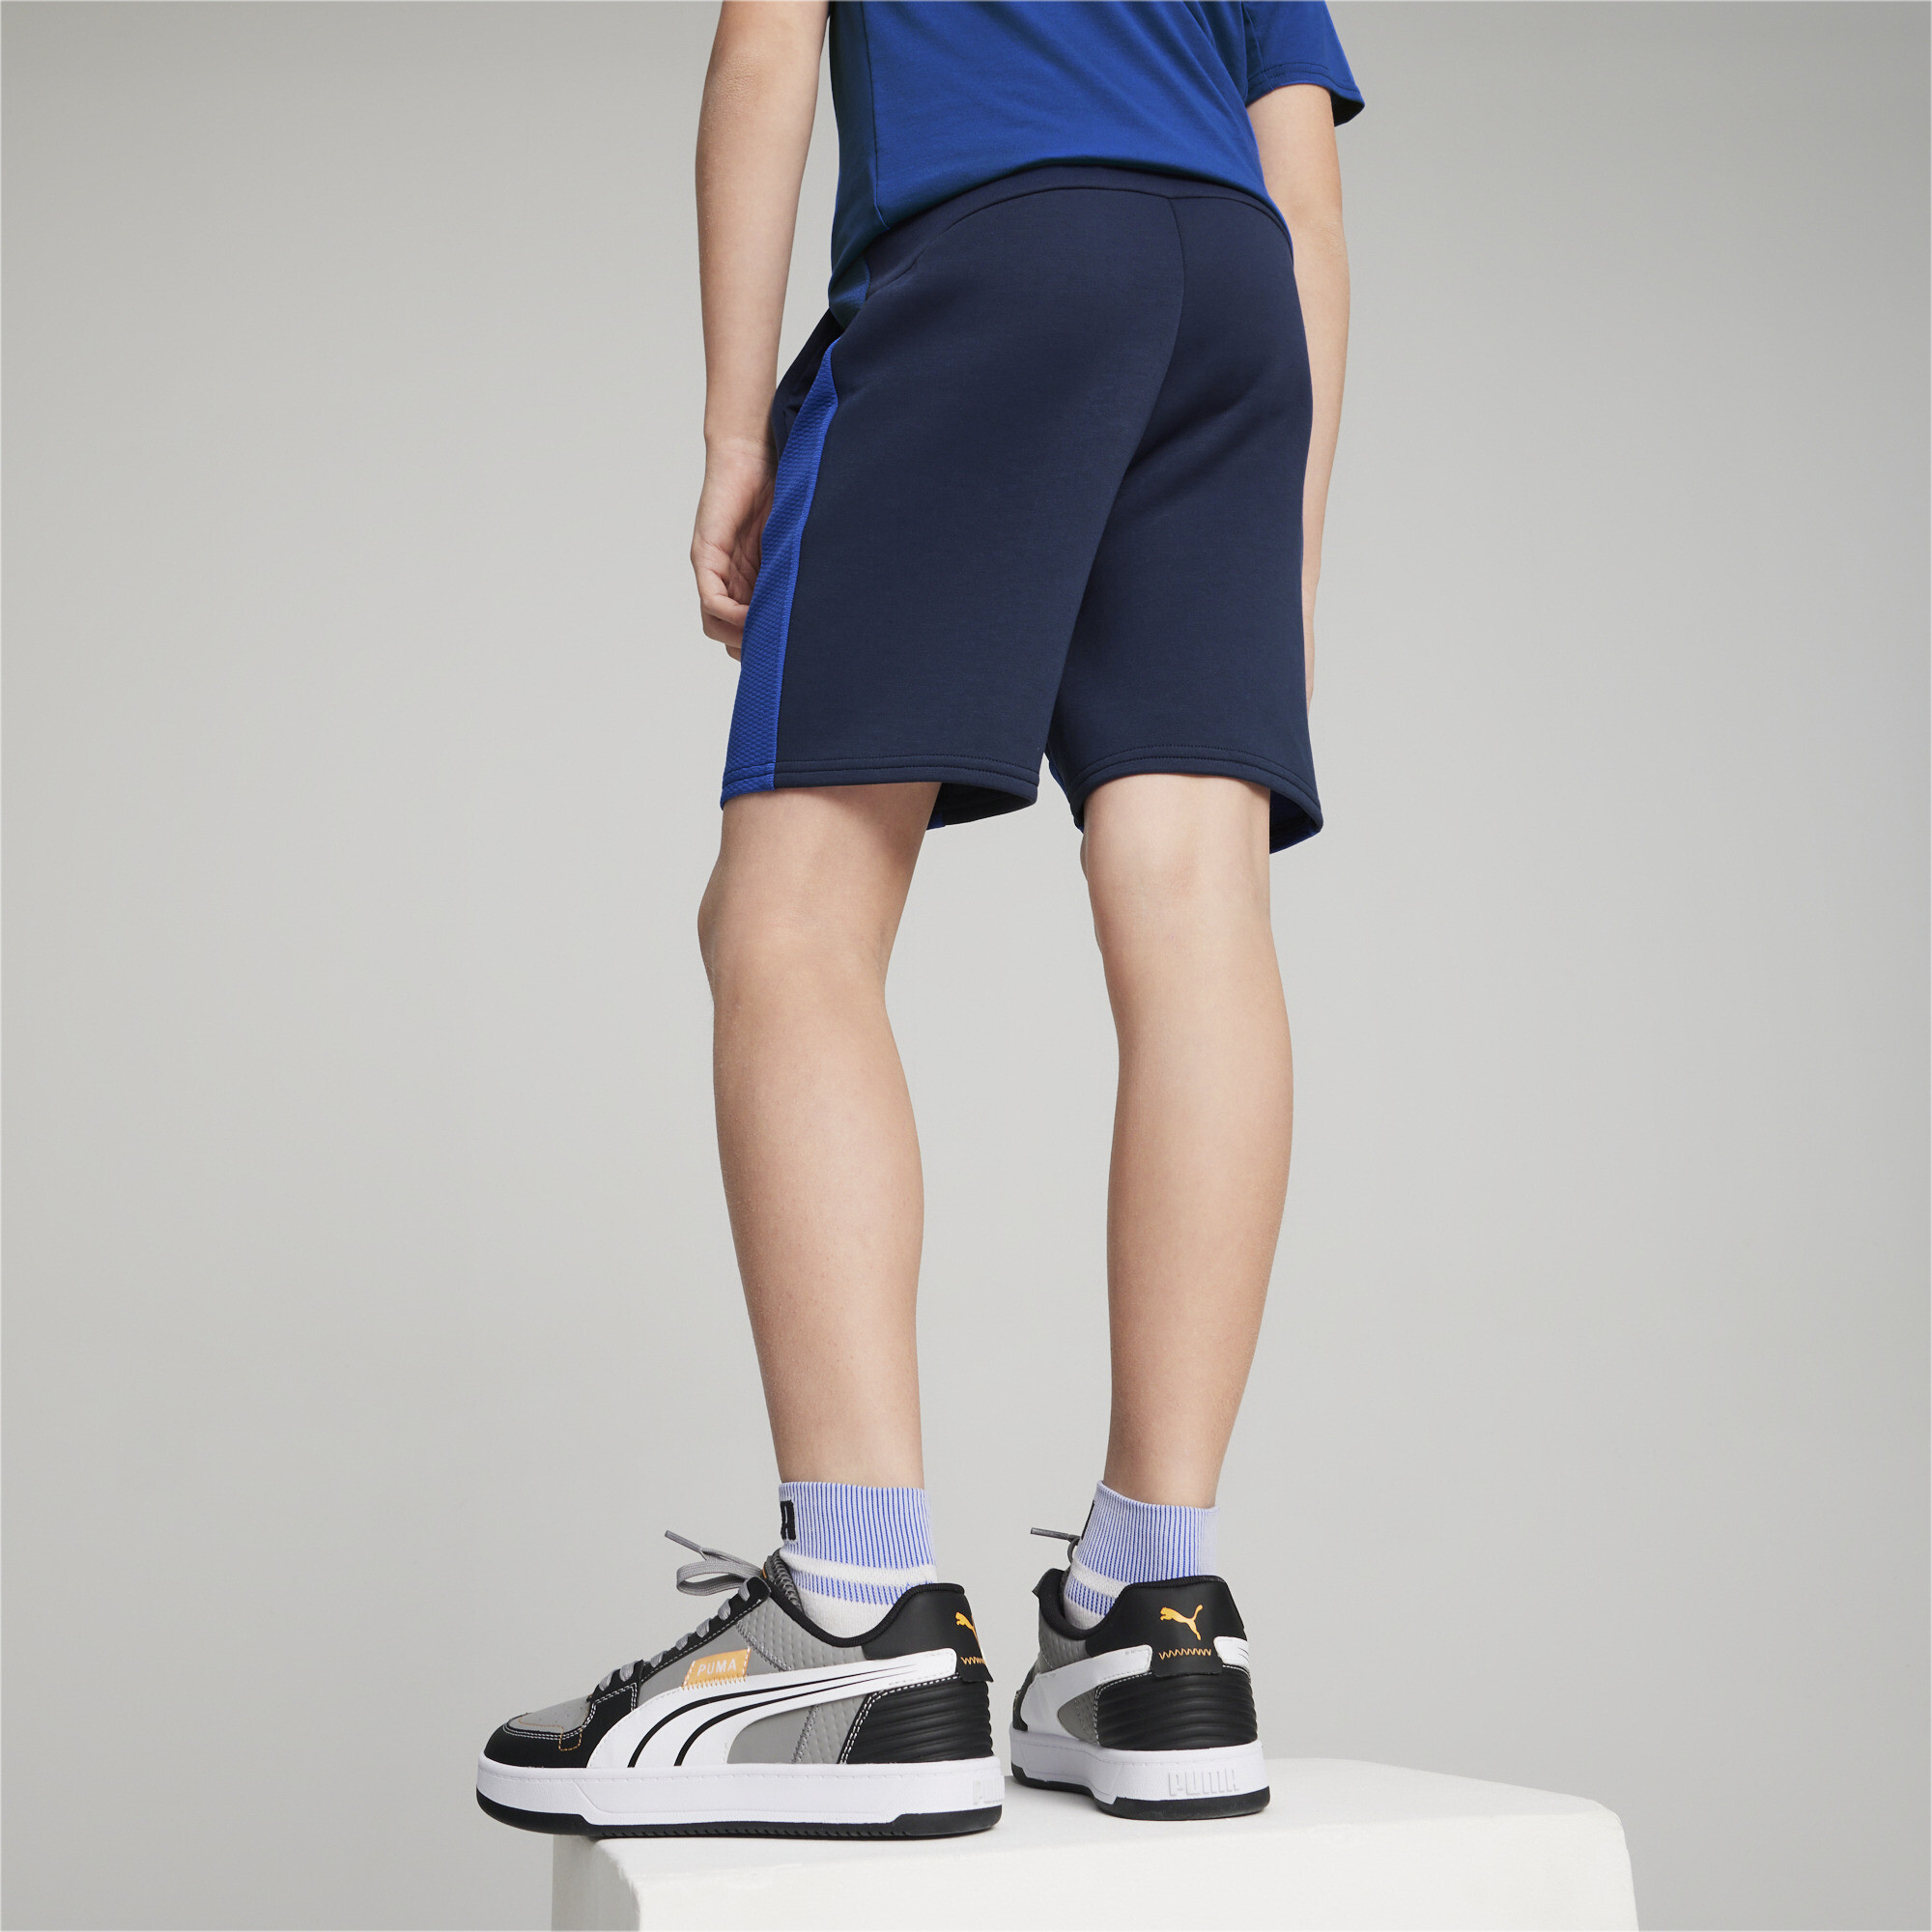 PUMA EVOSTRIPE Shorts In Blue, Size 11-12 Youth